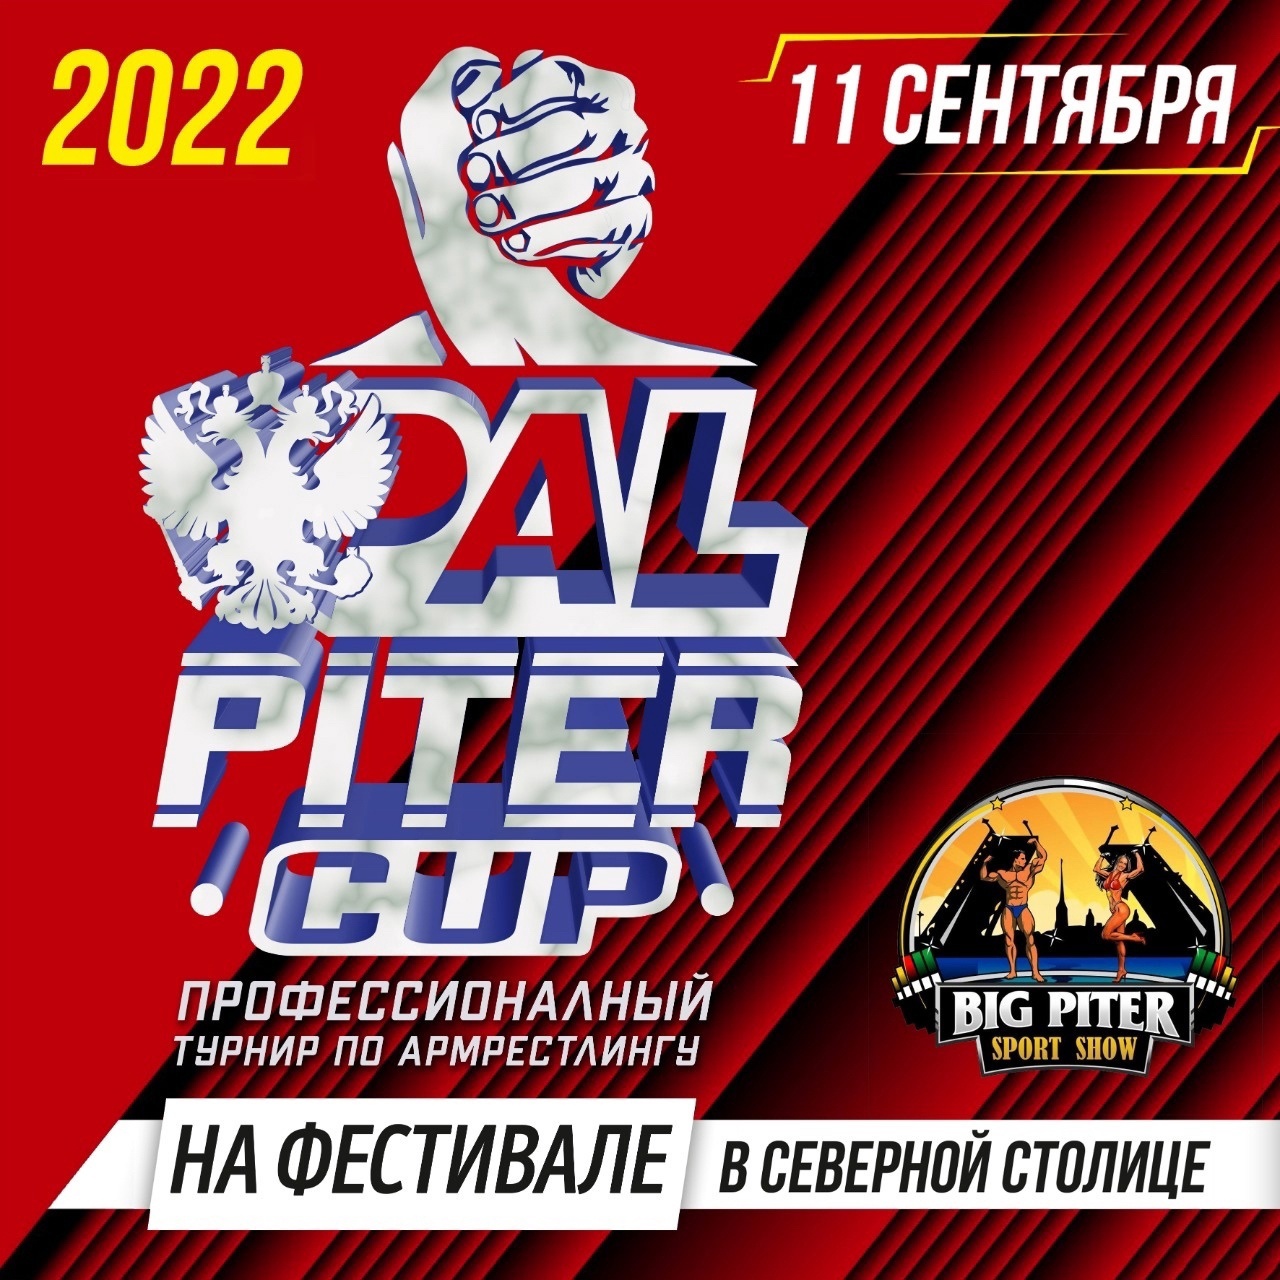 Мы хотим вас ближе познакомить с фестивалем BIG PITER SPORT SHOW 2022 20  Július
 2022  év
 